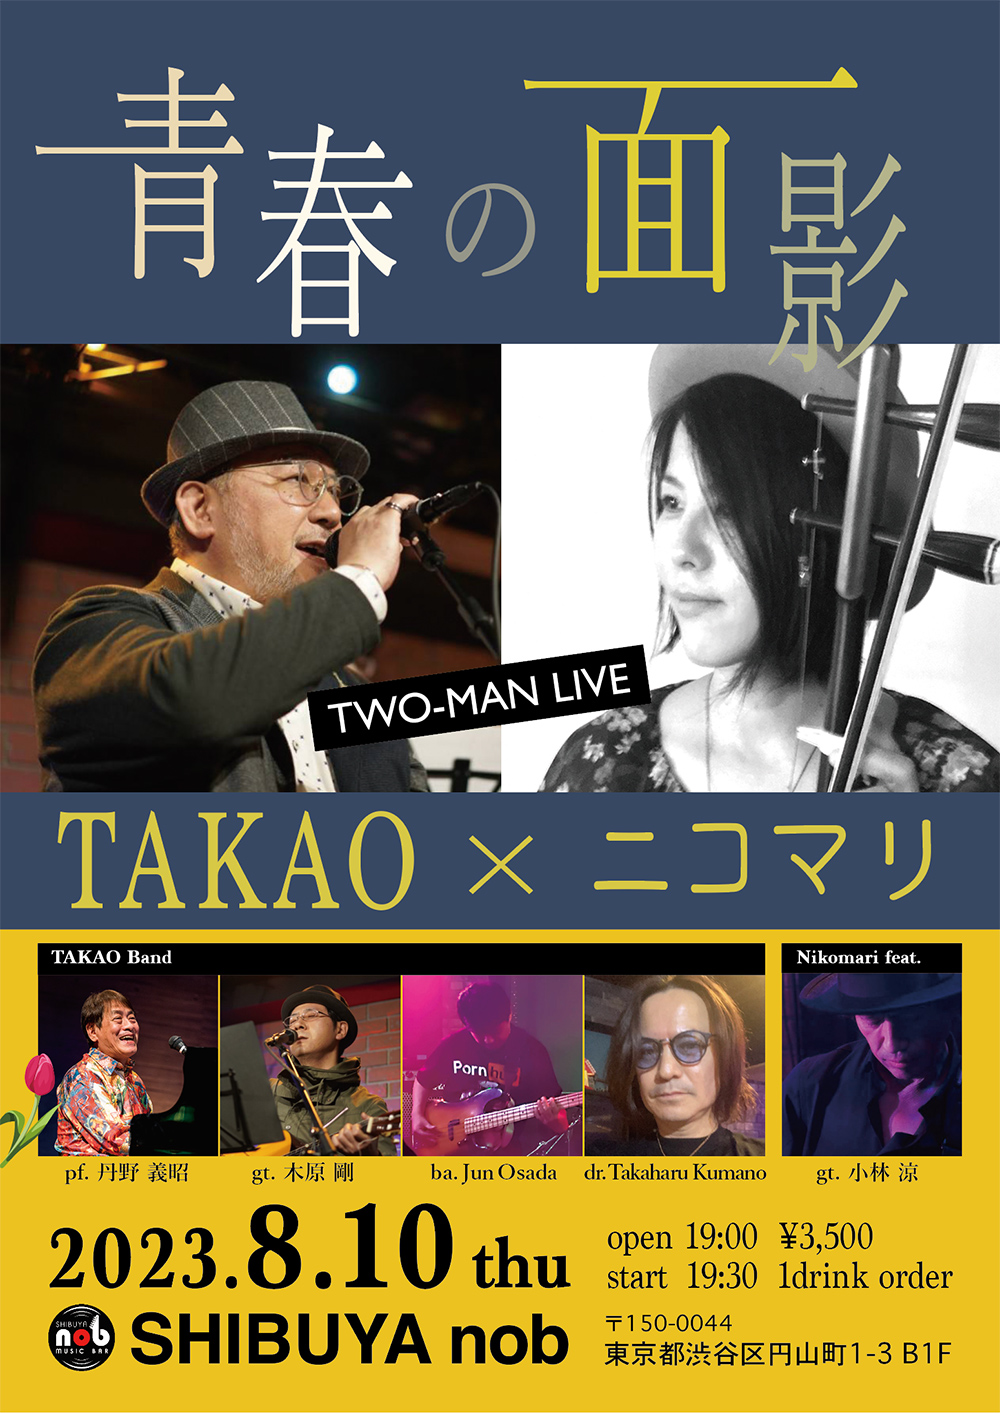 青春の面影 TAKAO × ニコマリ TWO-MAN LIVE – SHIBUYA nob